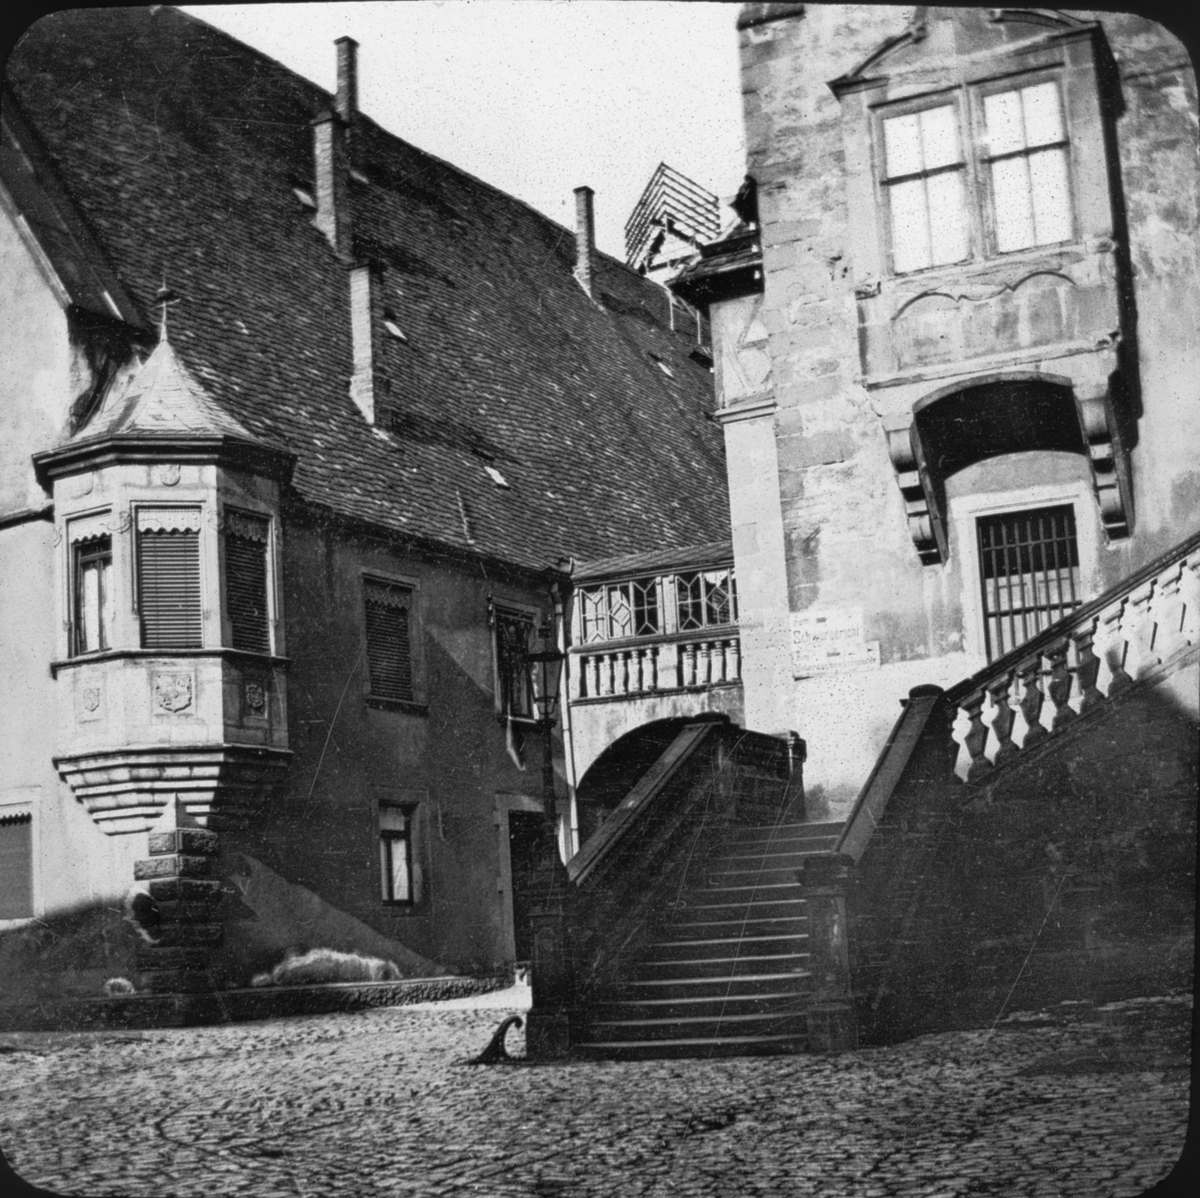 Skioptikonbild med motiv av typiskt tyskt hus i Heilbrionn.
Bilden har förvarats i kartong märkt: Resan 1907. Heilbronn 6. Stuttgart 1. Berlin 2. Text på bild: "Deutsches Haus"